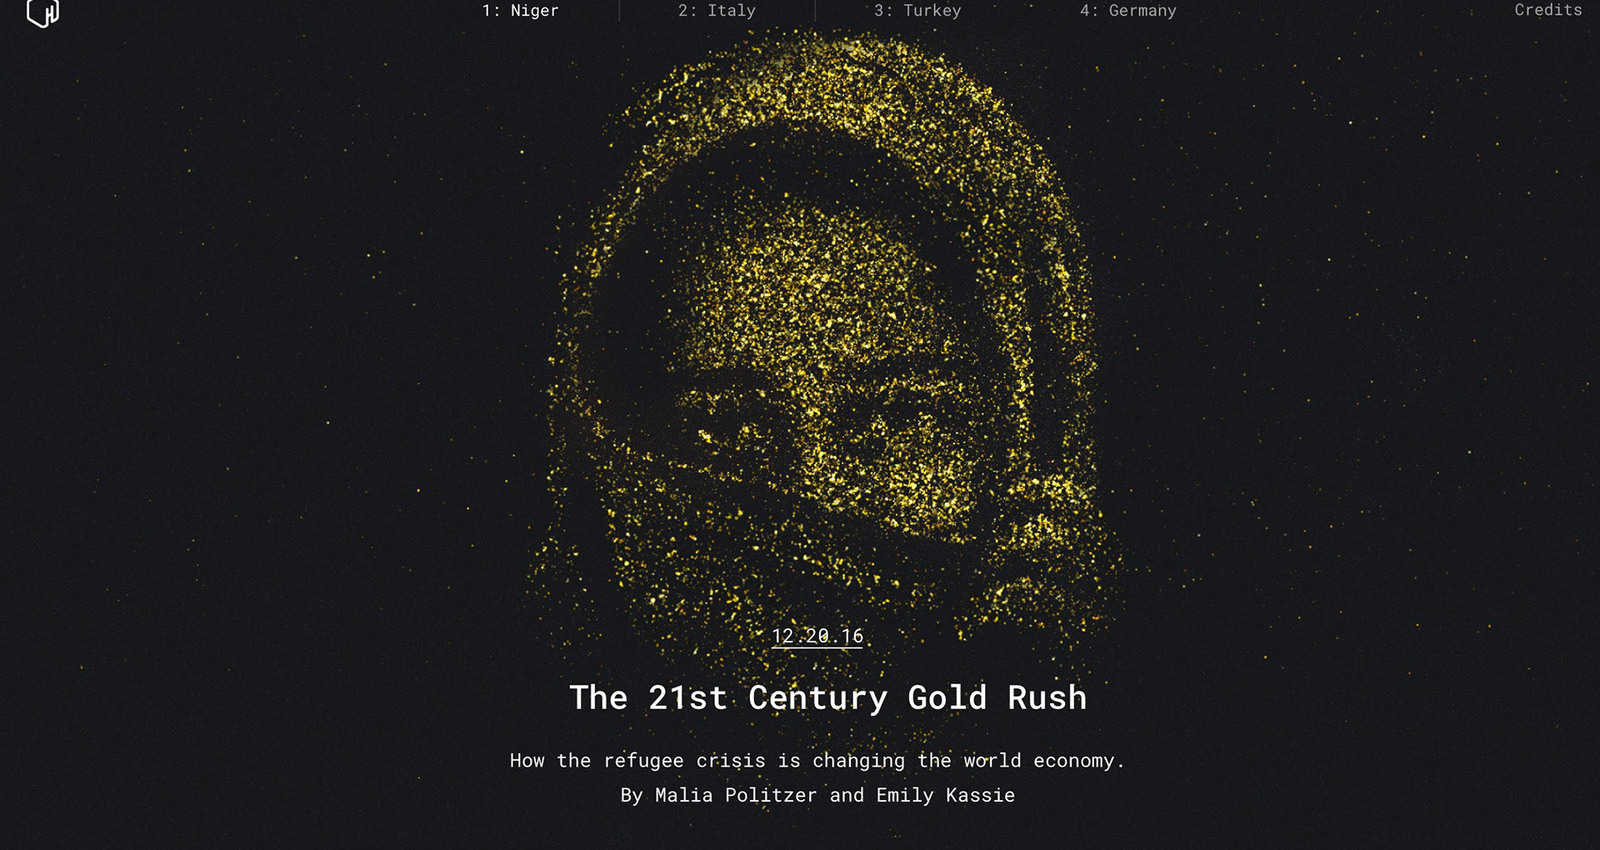 The 21st Century Gold Rush